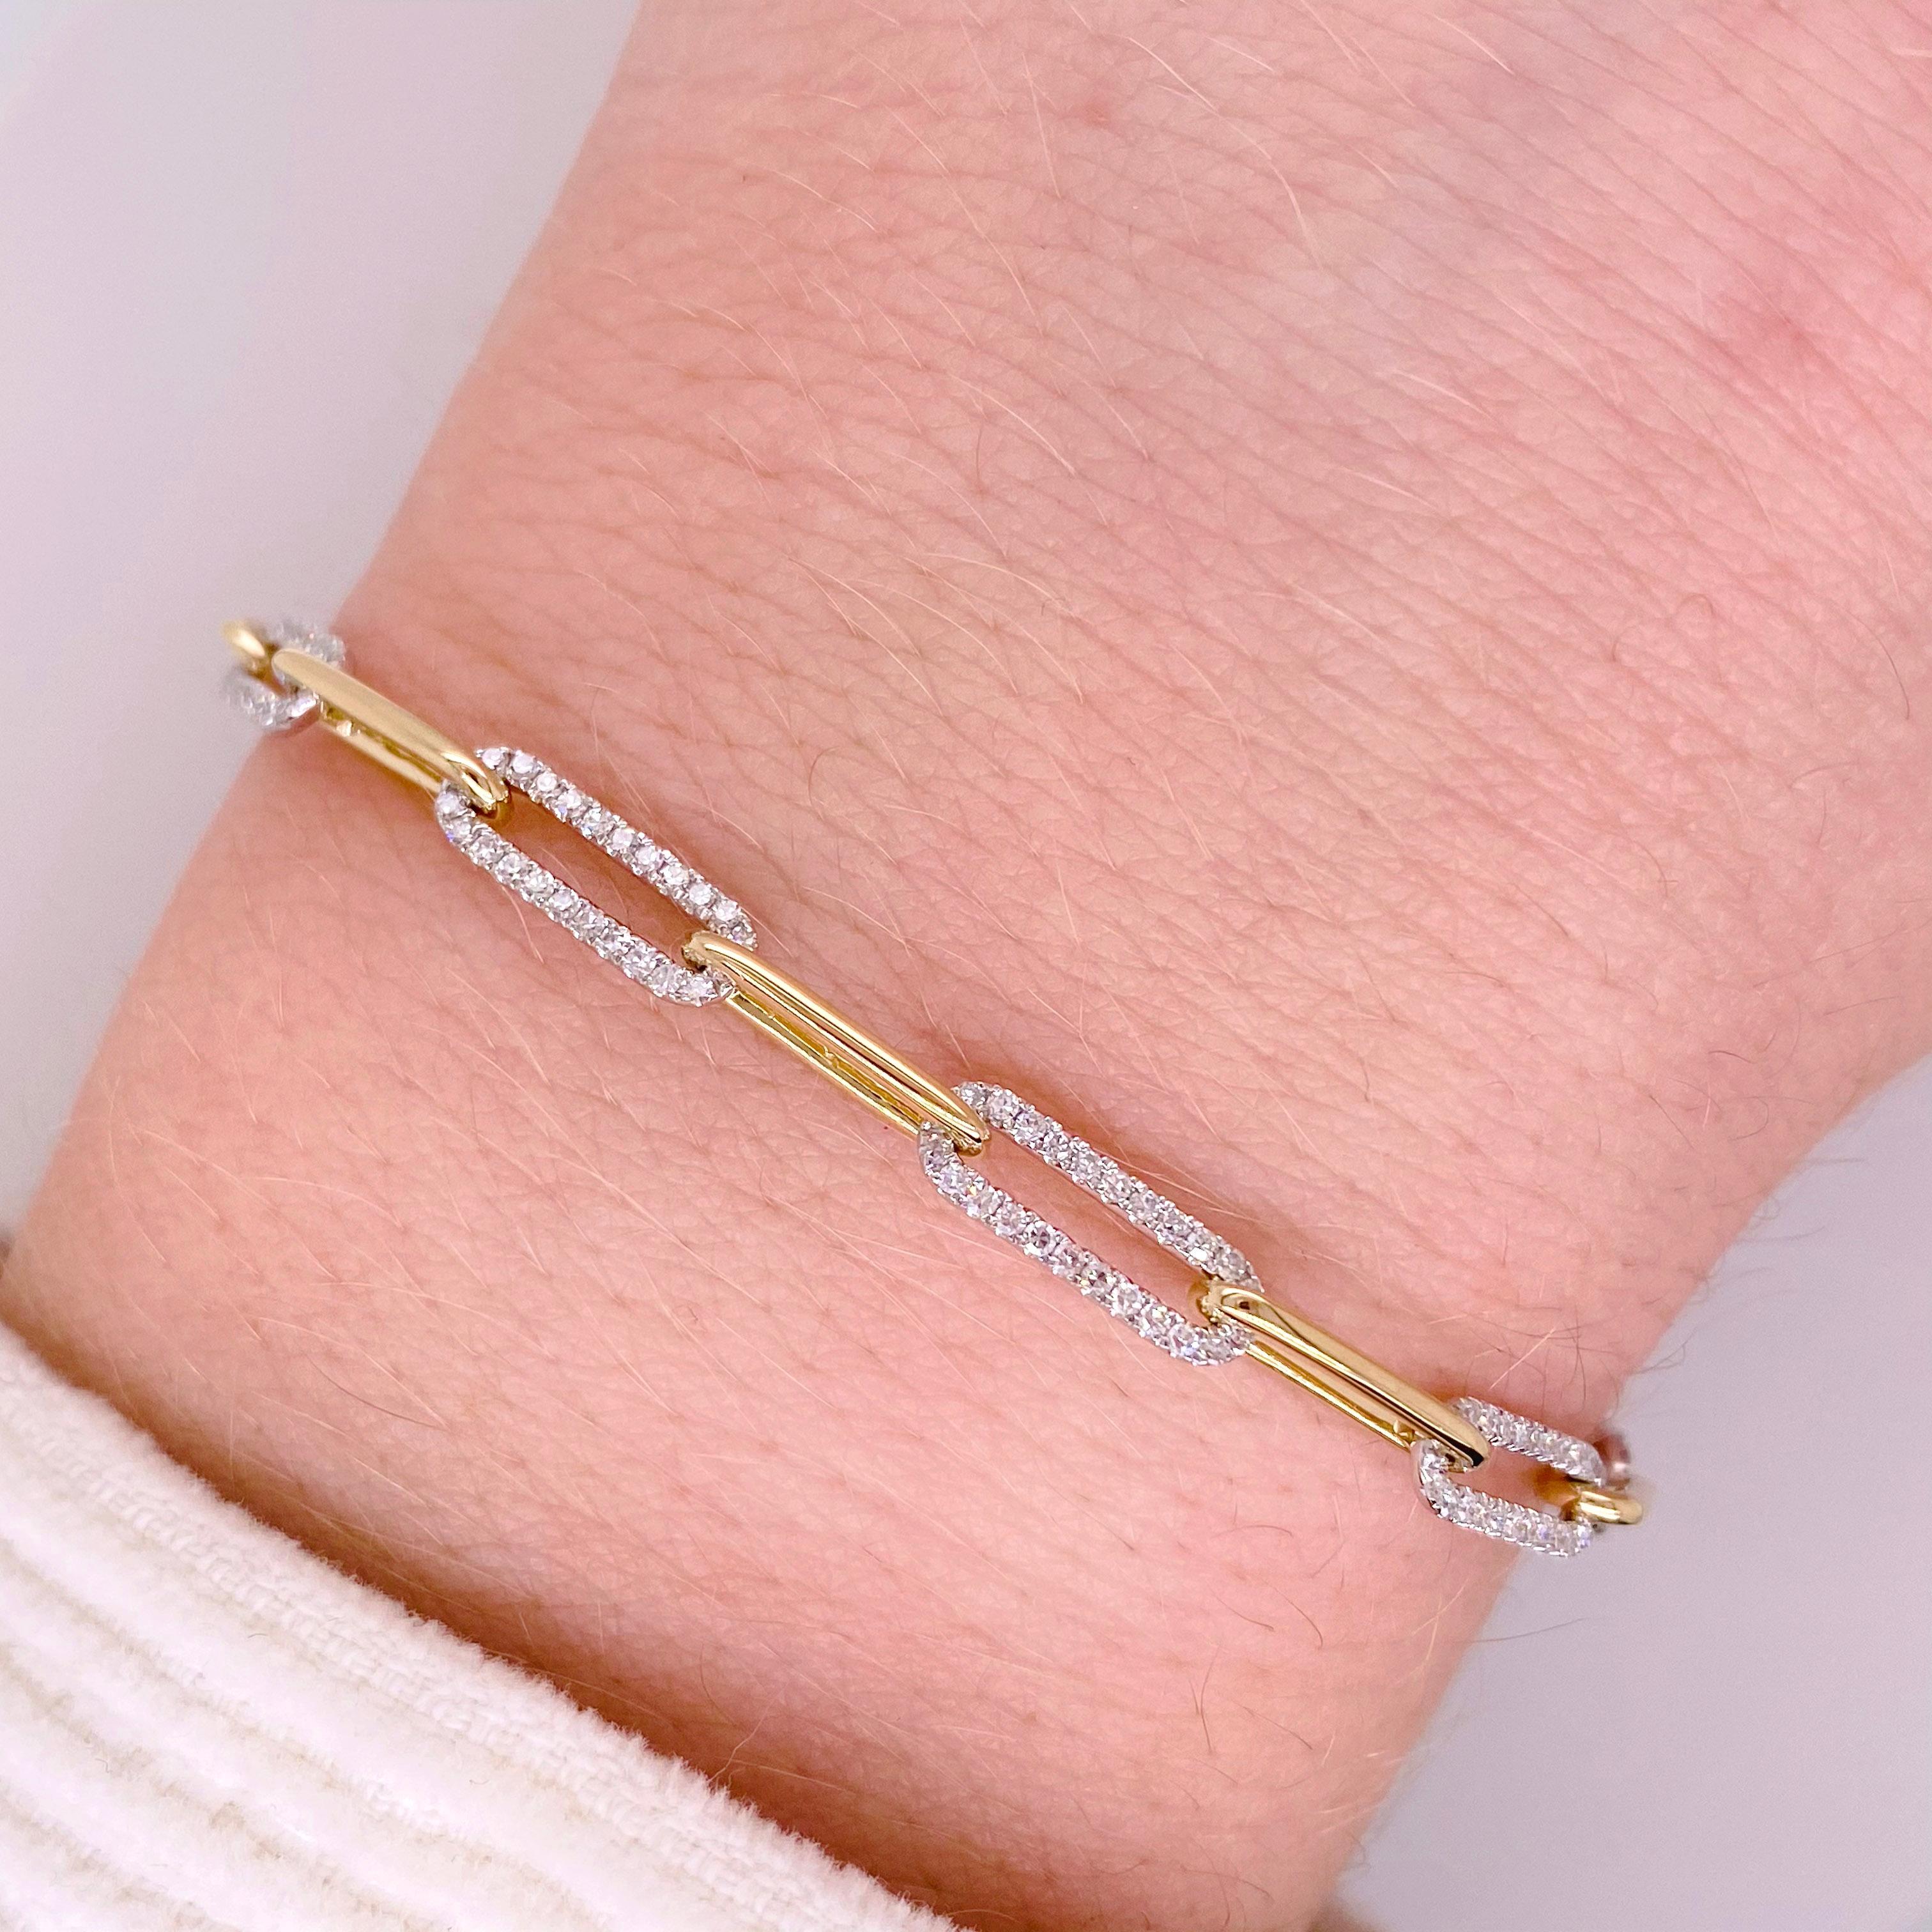 Ce magnifique bracelet est orné de diamants tous les deux maillons et compte 206 diamants brillants pleine taille !  Le bracelet pour femme est exceptionnellement attrayant et étincelant sous tous les angles. Le bracelet est composé d'or jaune et